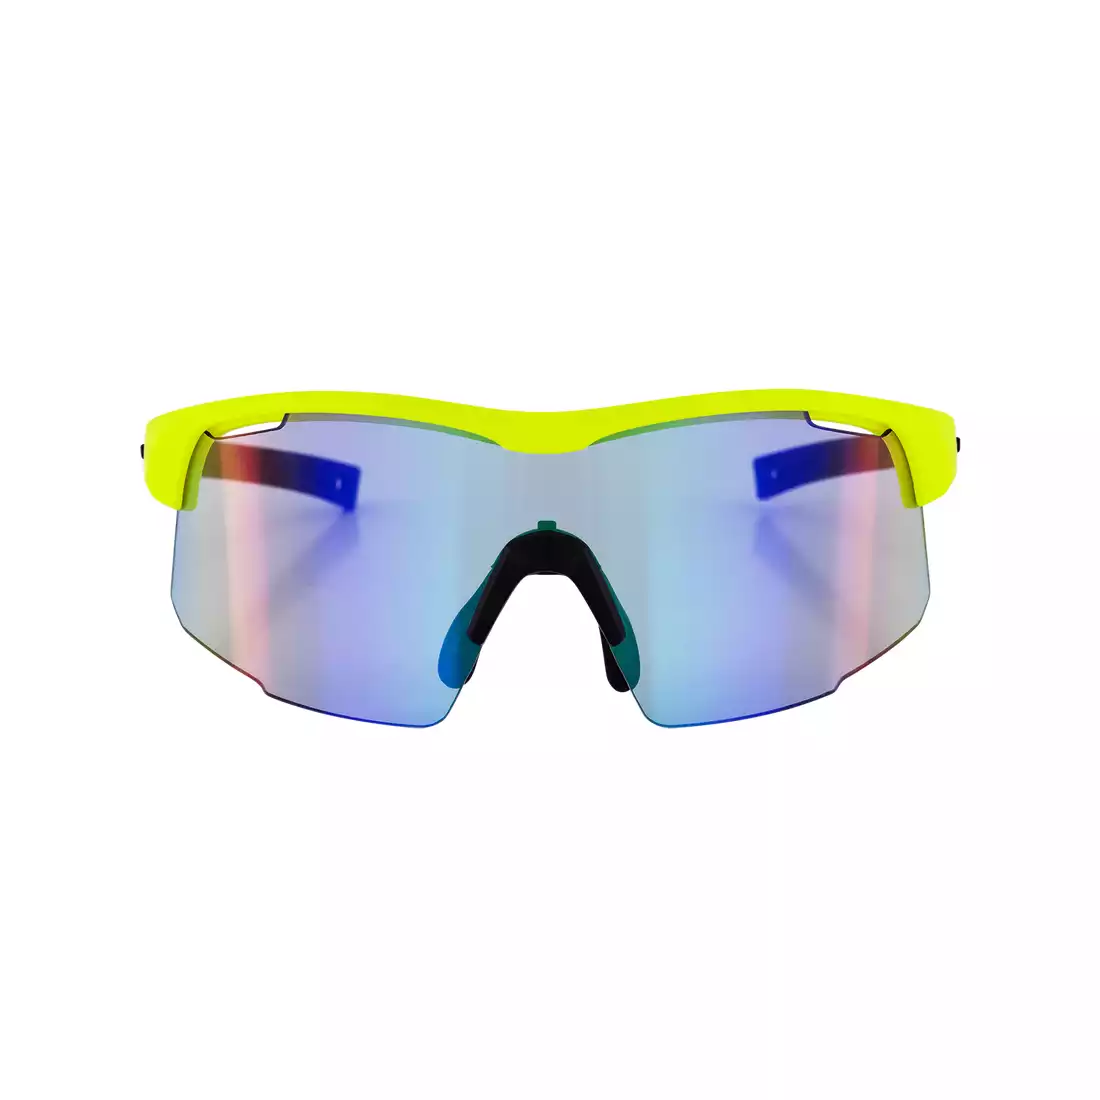 ROGELLI okulary sportowe z wymiennymi szkłami PULSE fluor 009.267